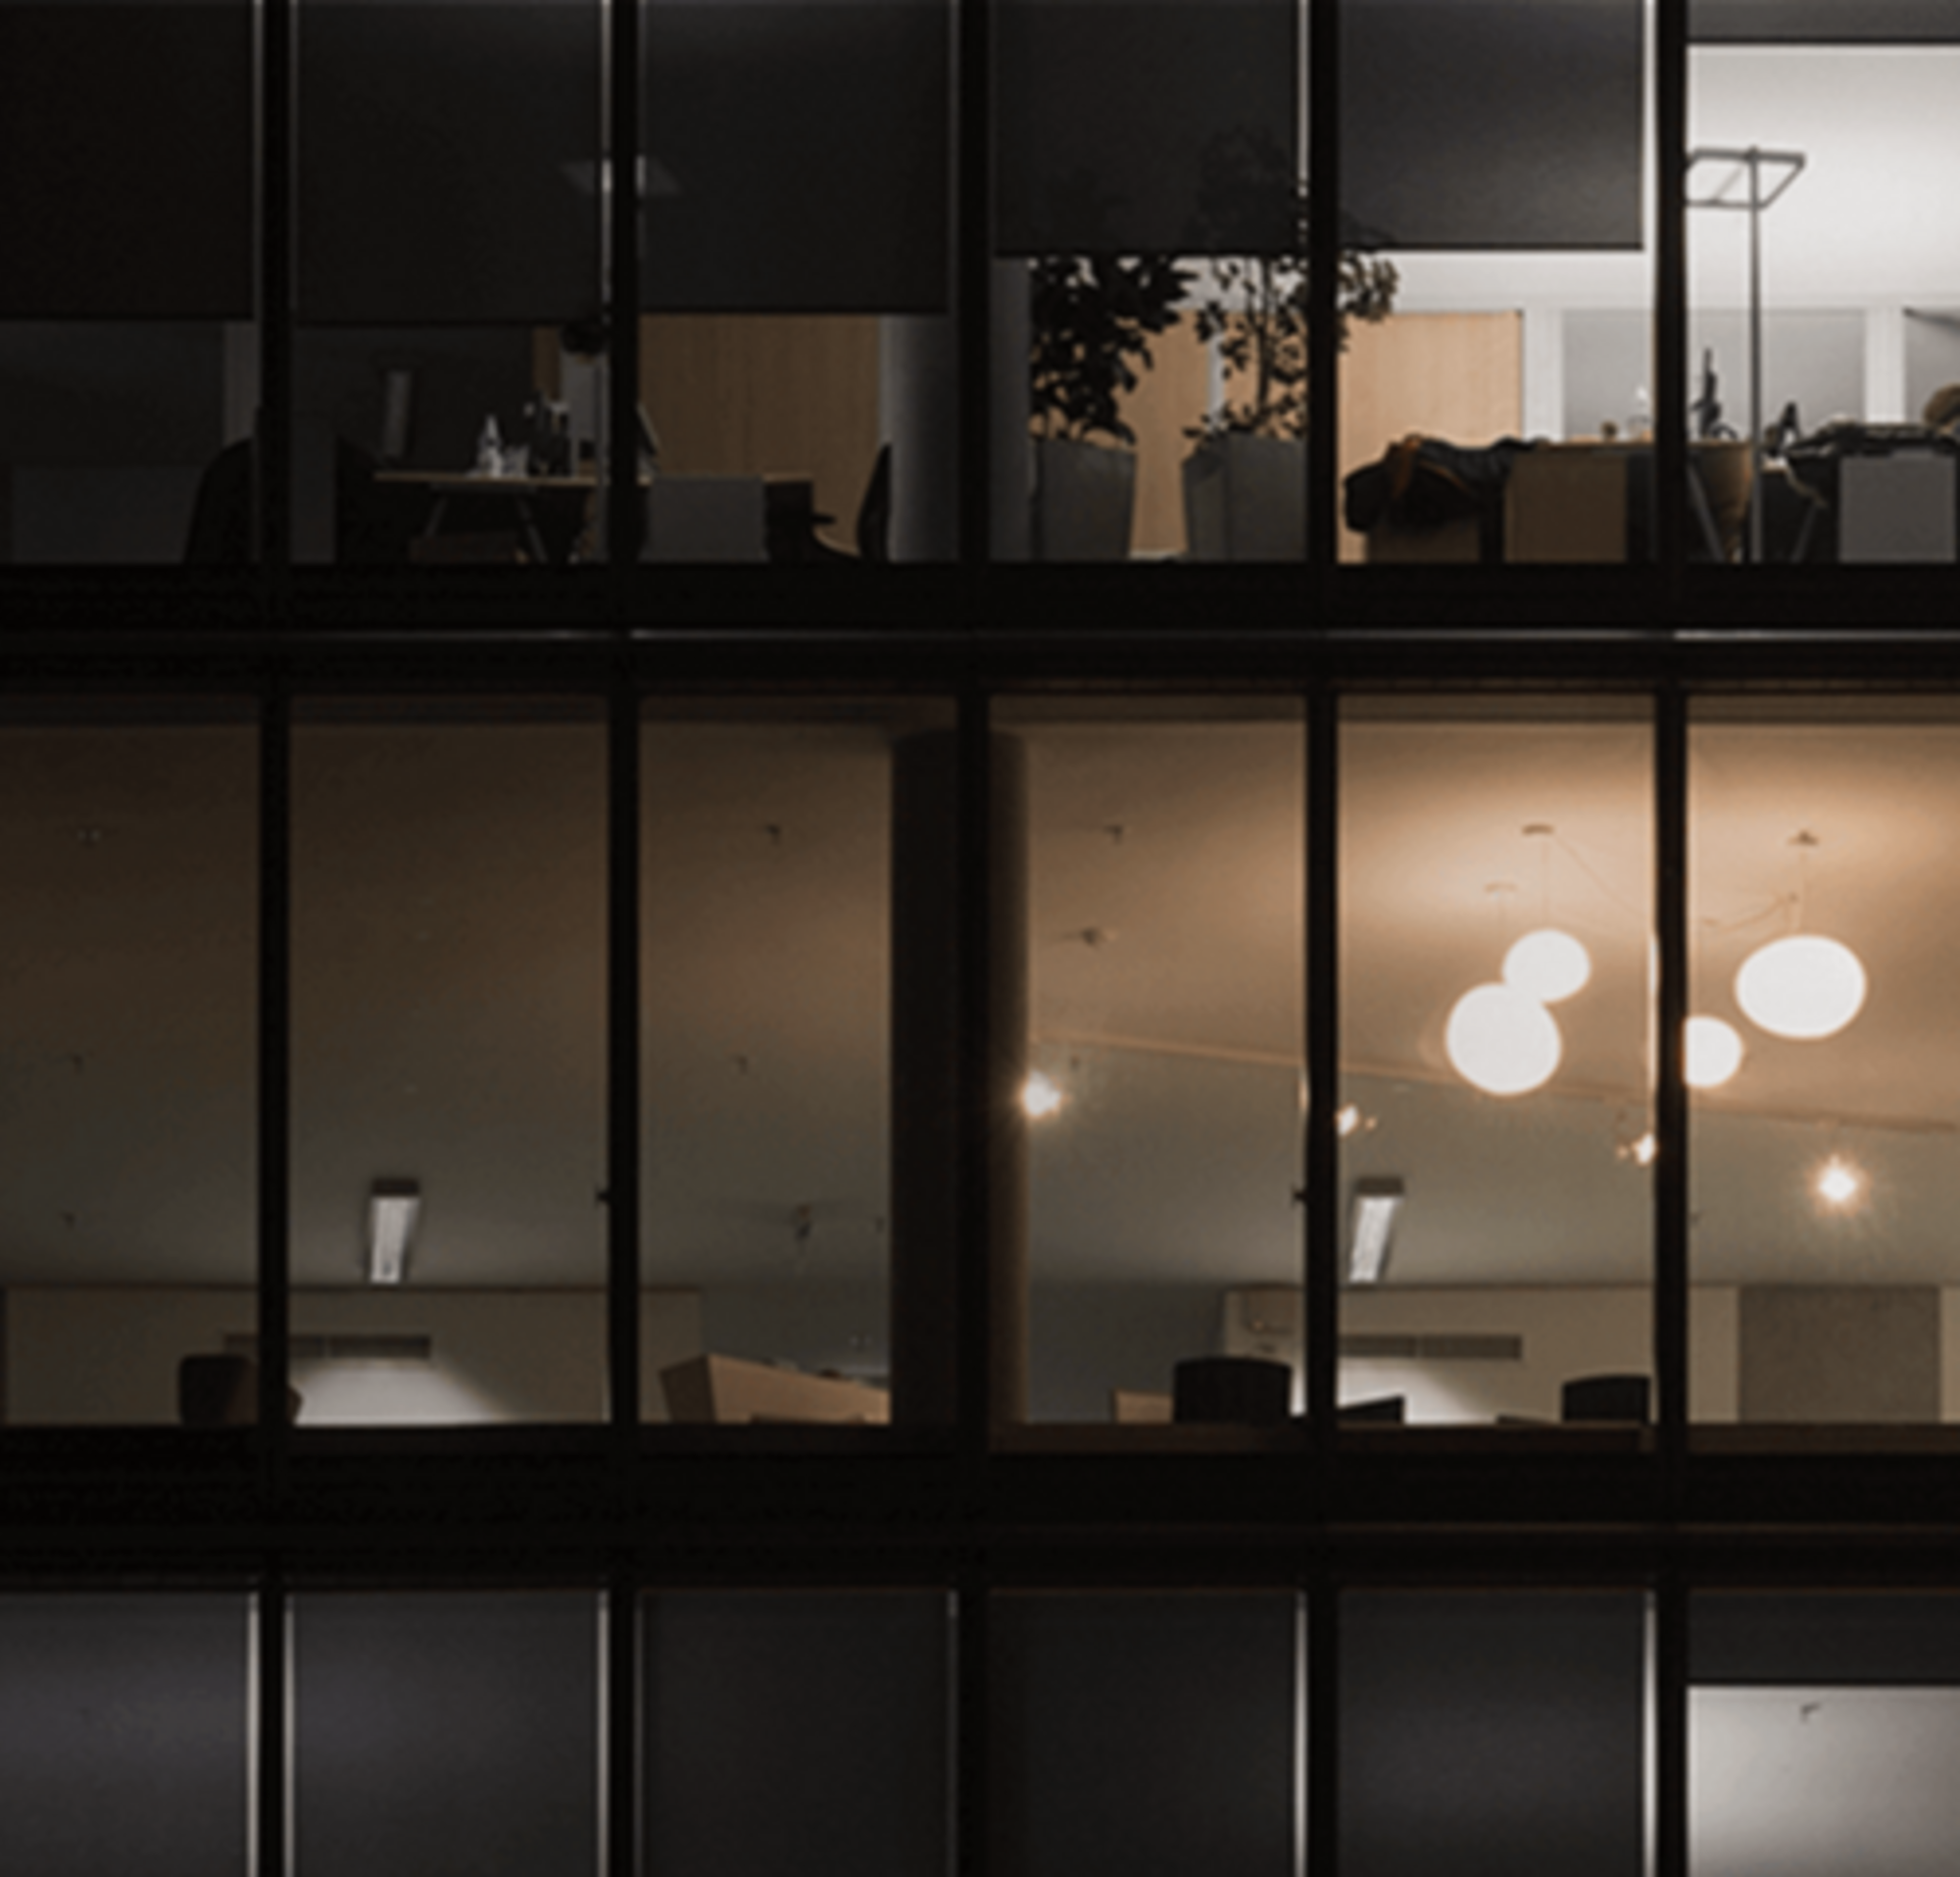 Ein Bild von drei größtenteils dunklen Stockwerken in einem mehrgeschossigen Bürogebäude bei Nacht.